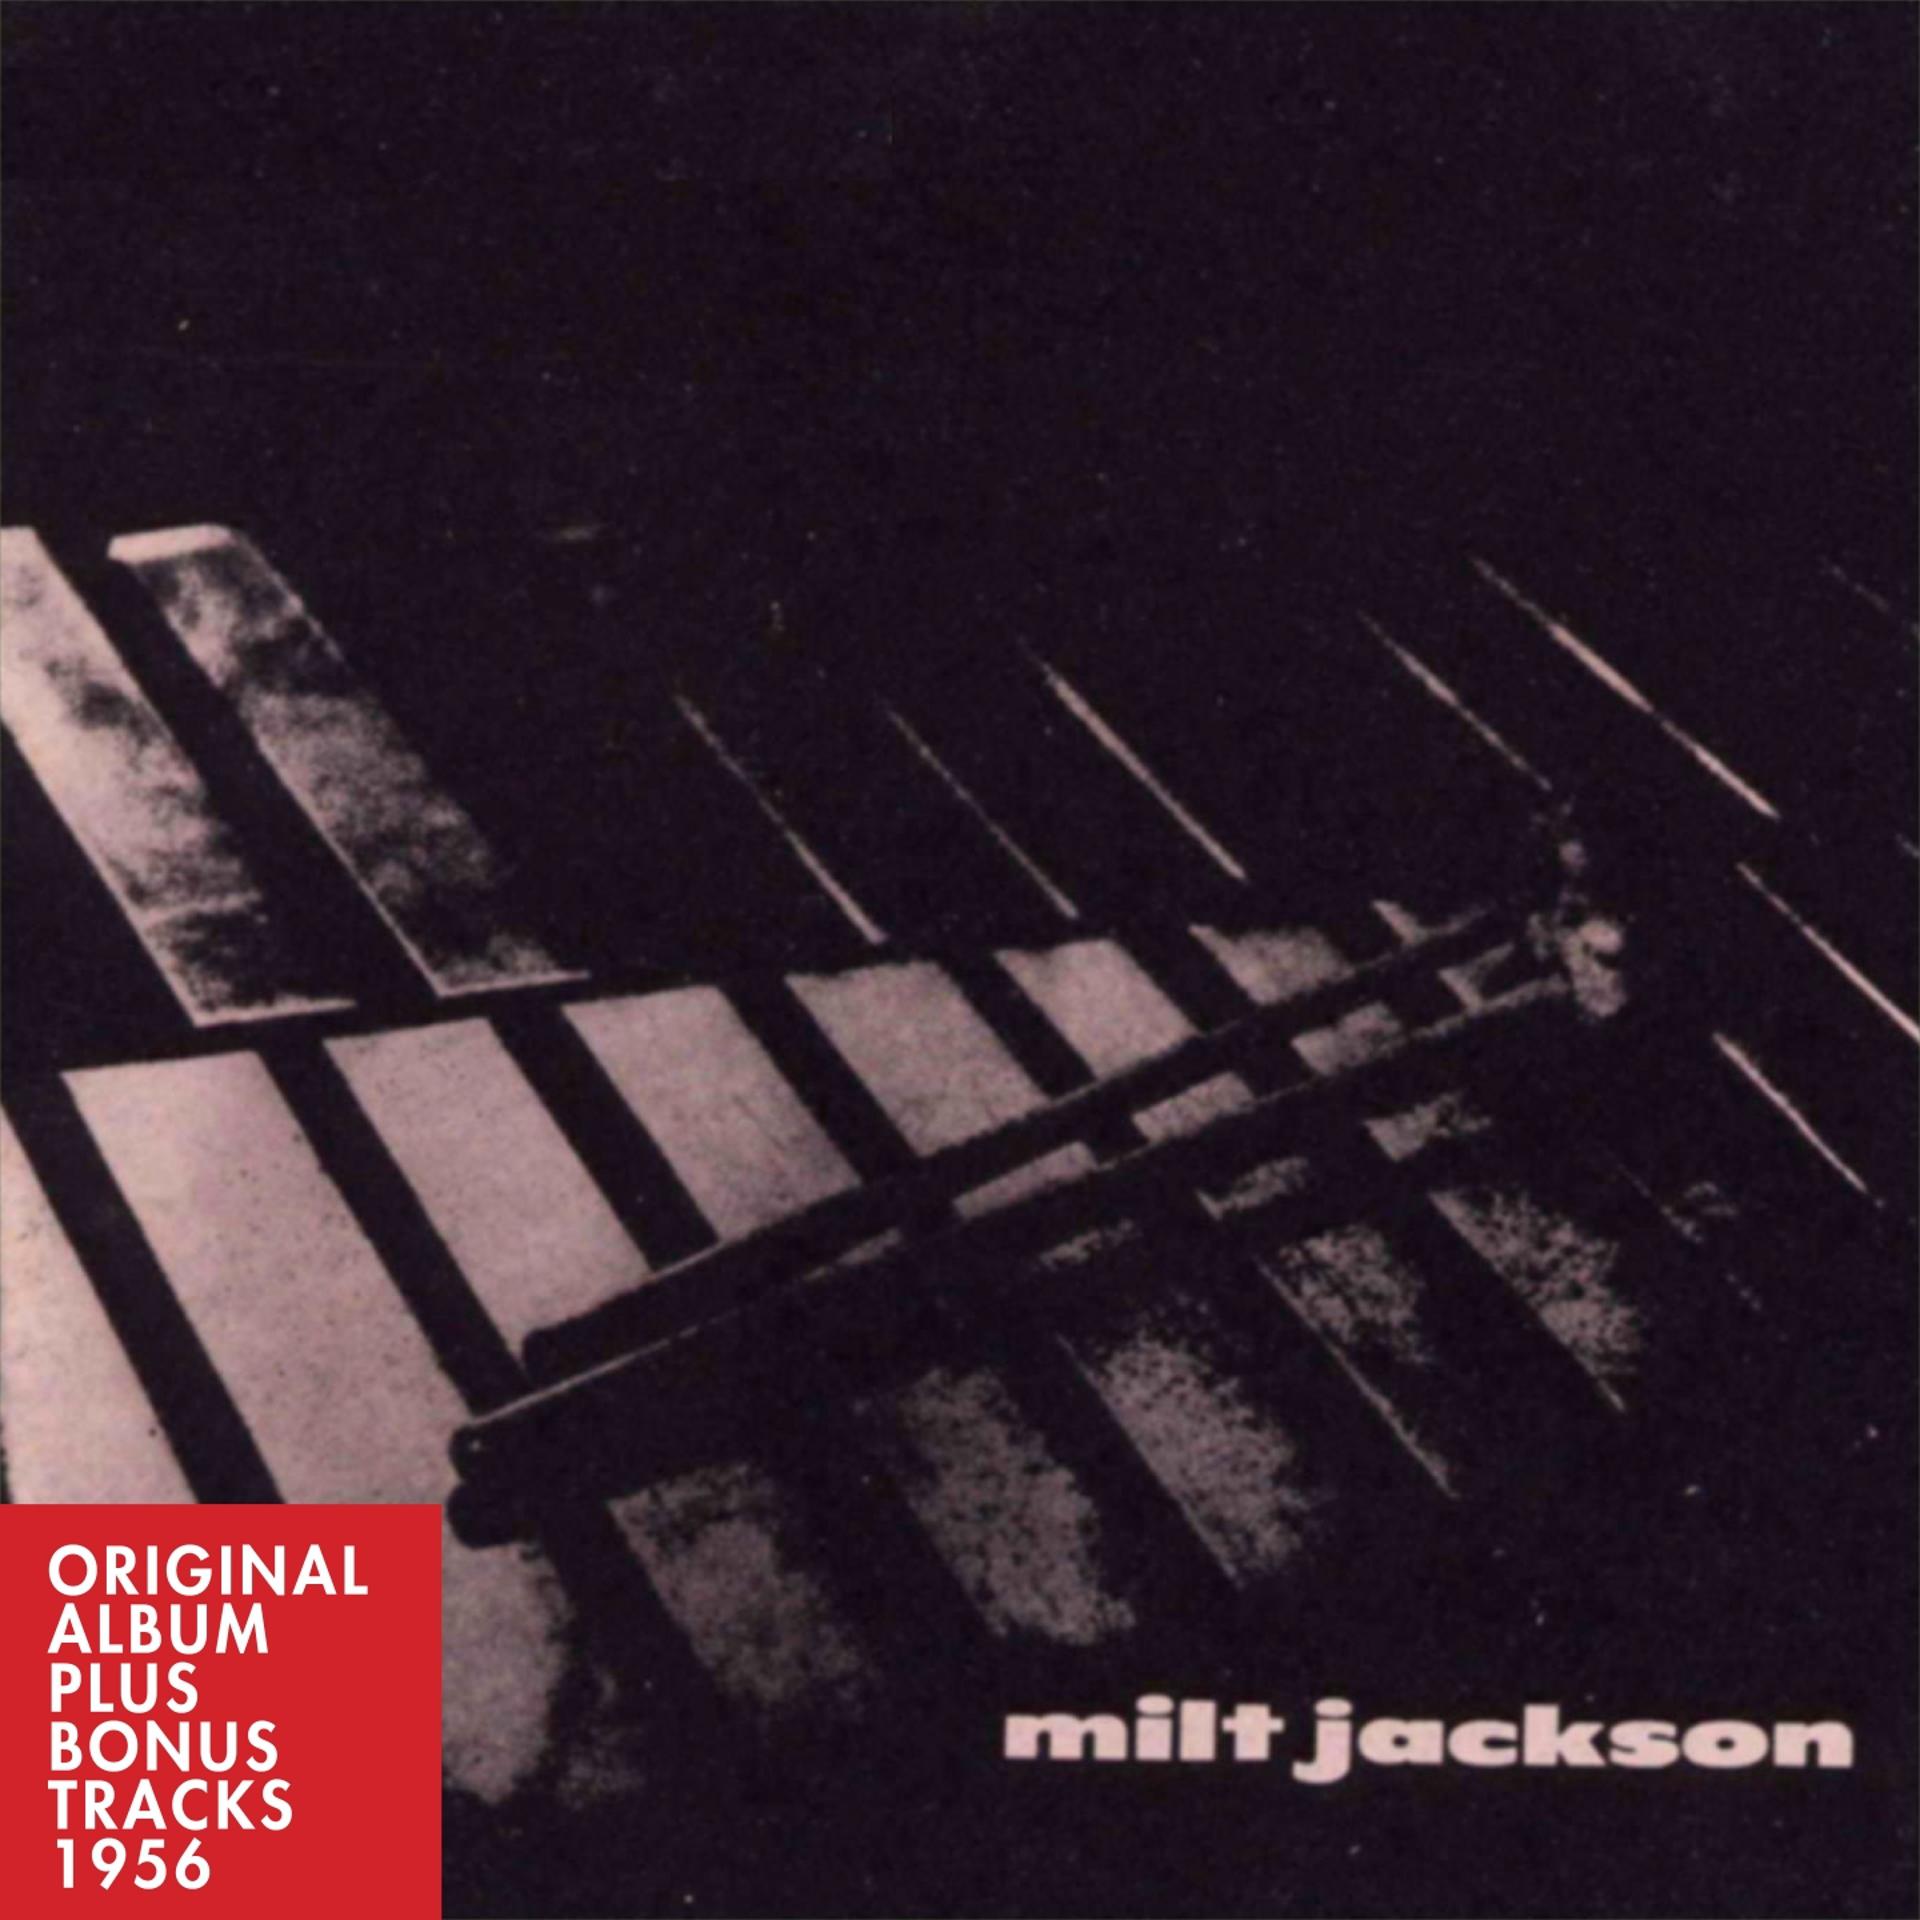 Постер альбома Milt Jackson Quartet